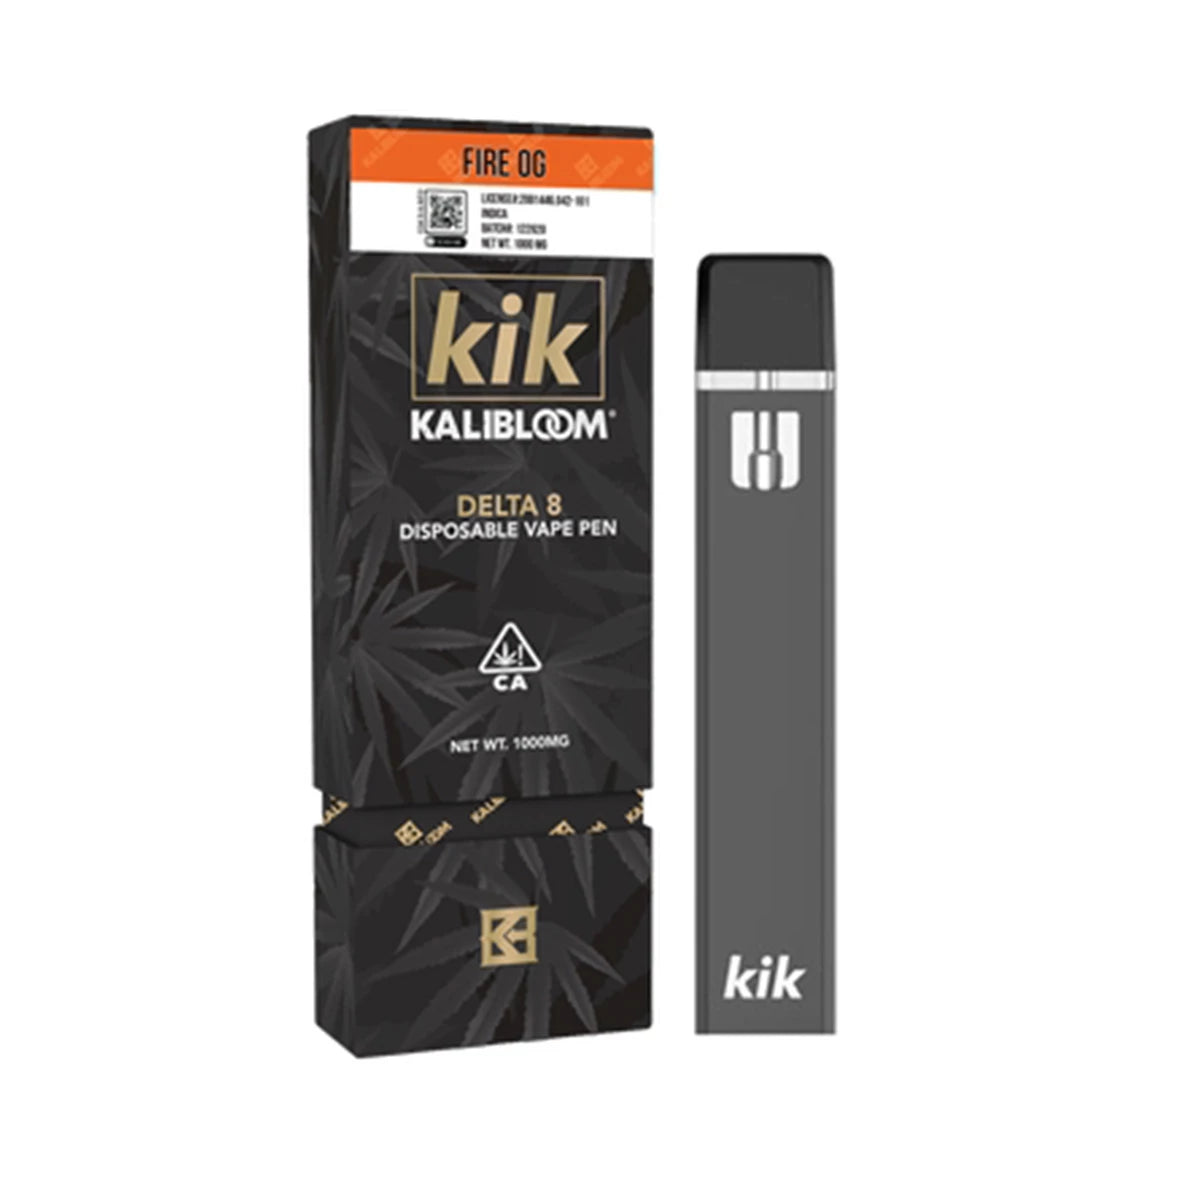 Kalibloom Kik Fire OG Delta 8 Disposable (1g) Best Sales Price - Vape Pens